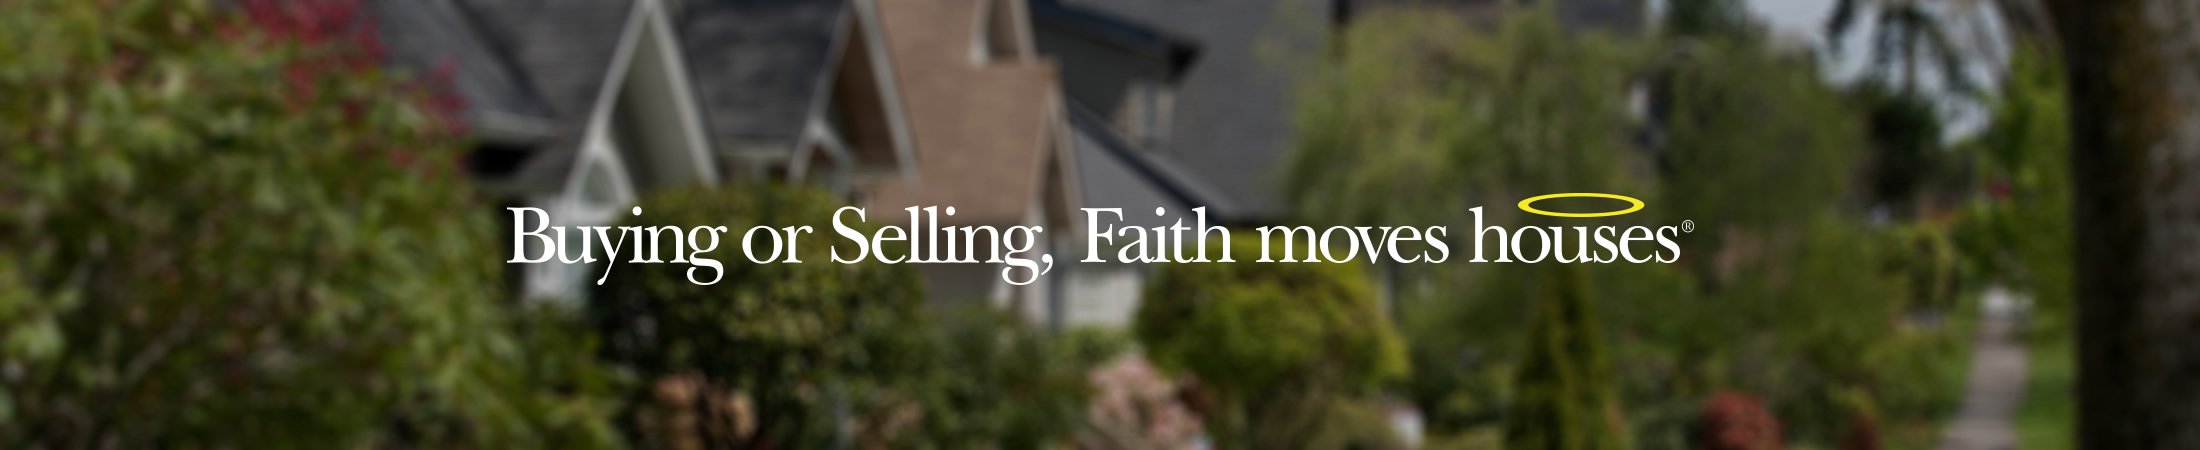 Faith-wilson-group-banner